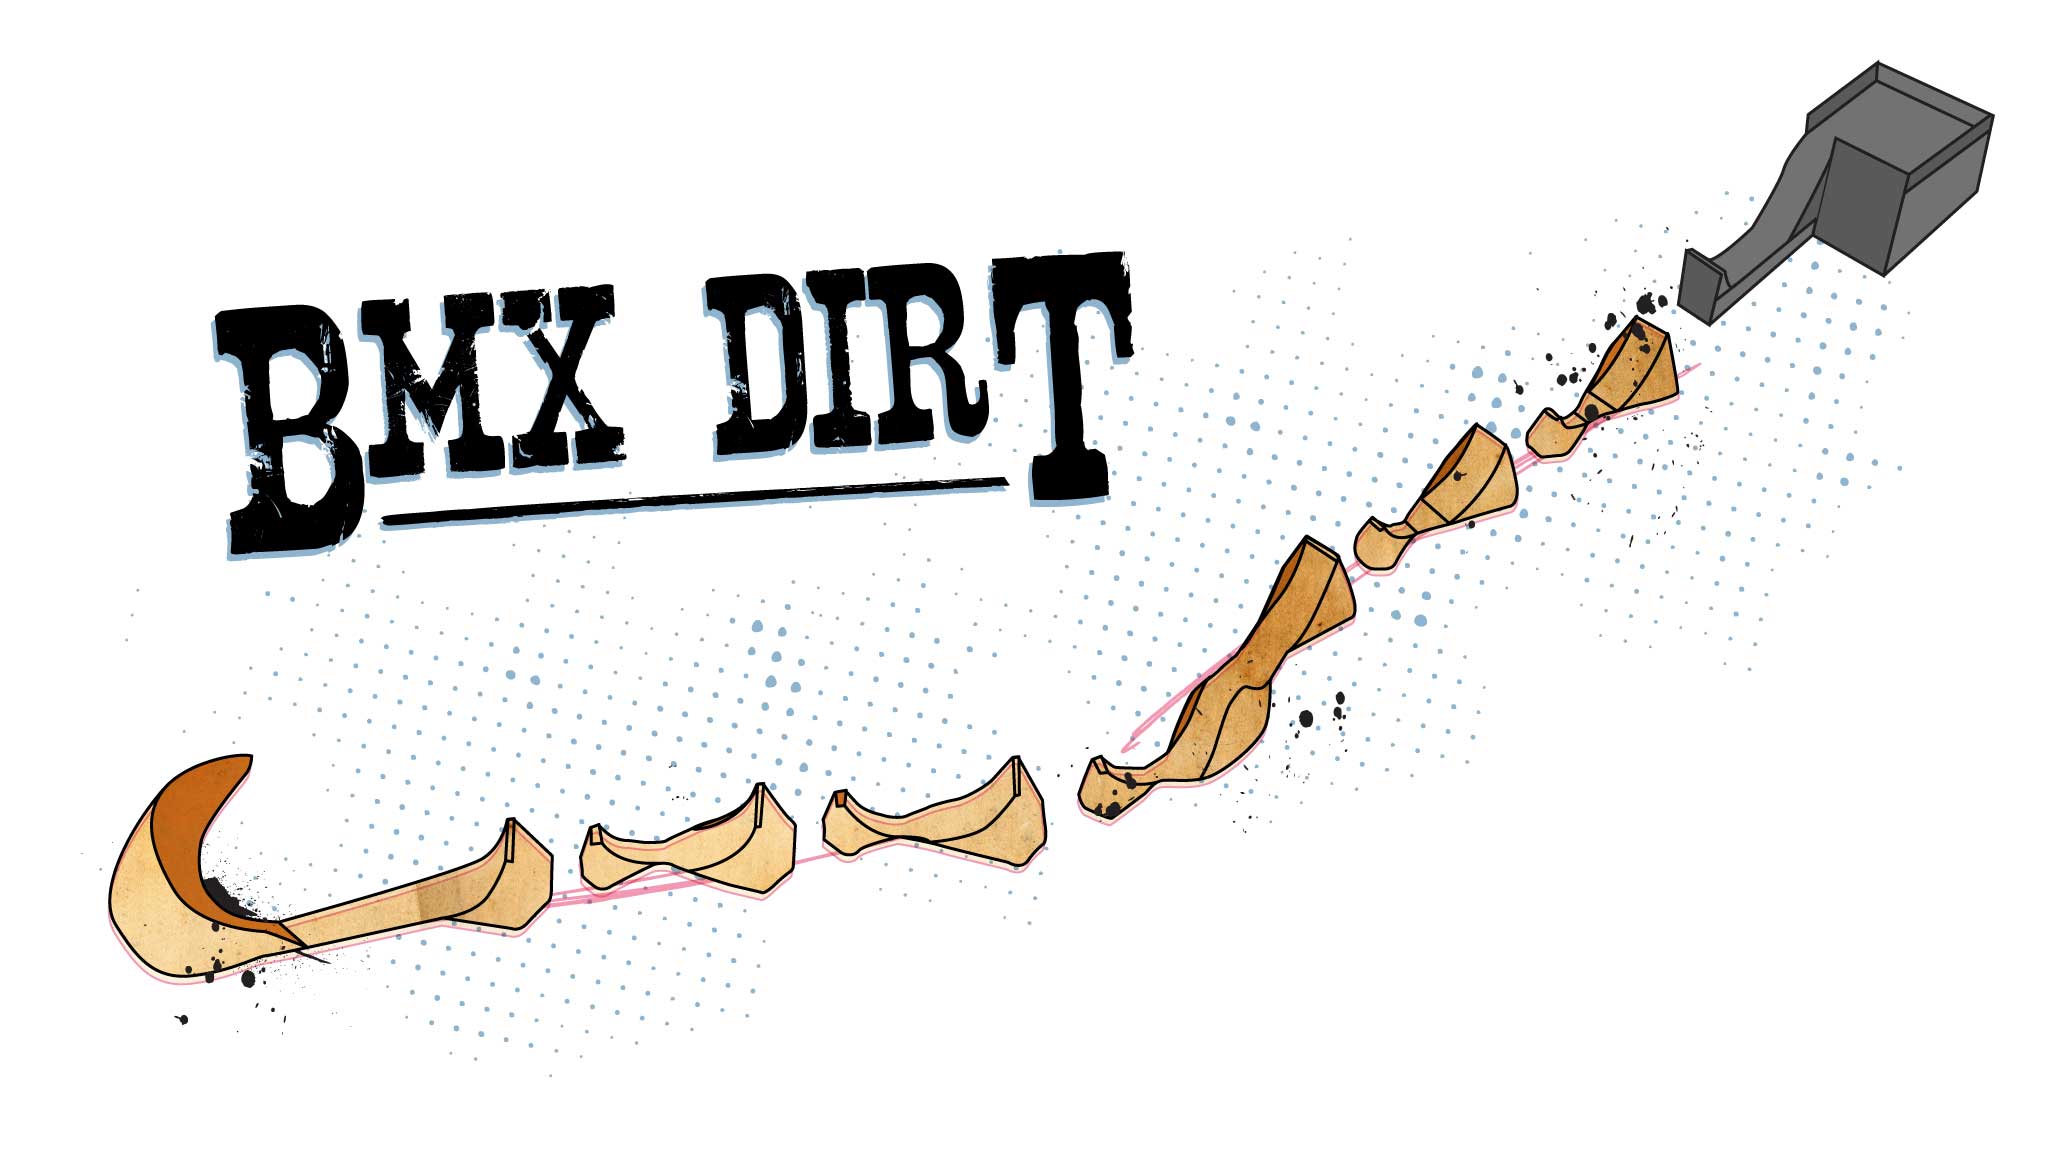 BMX Dirt